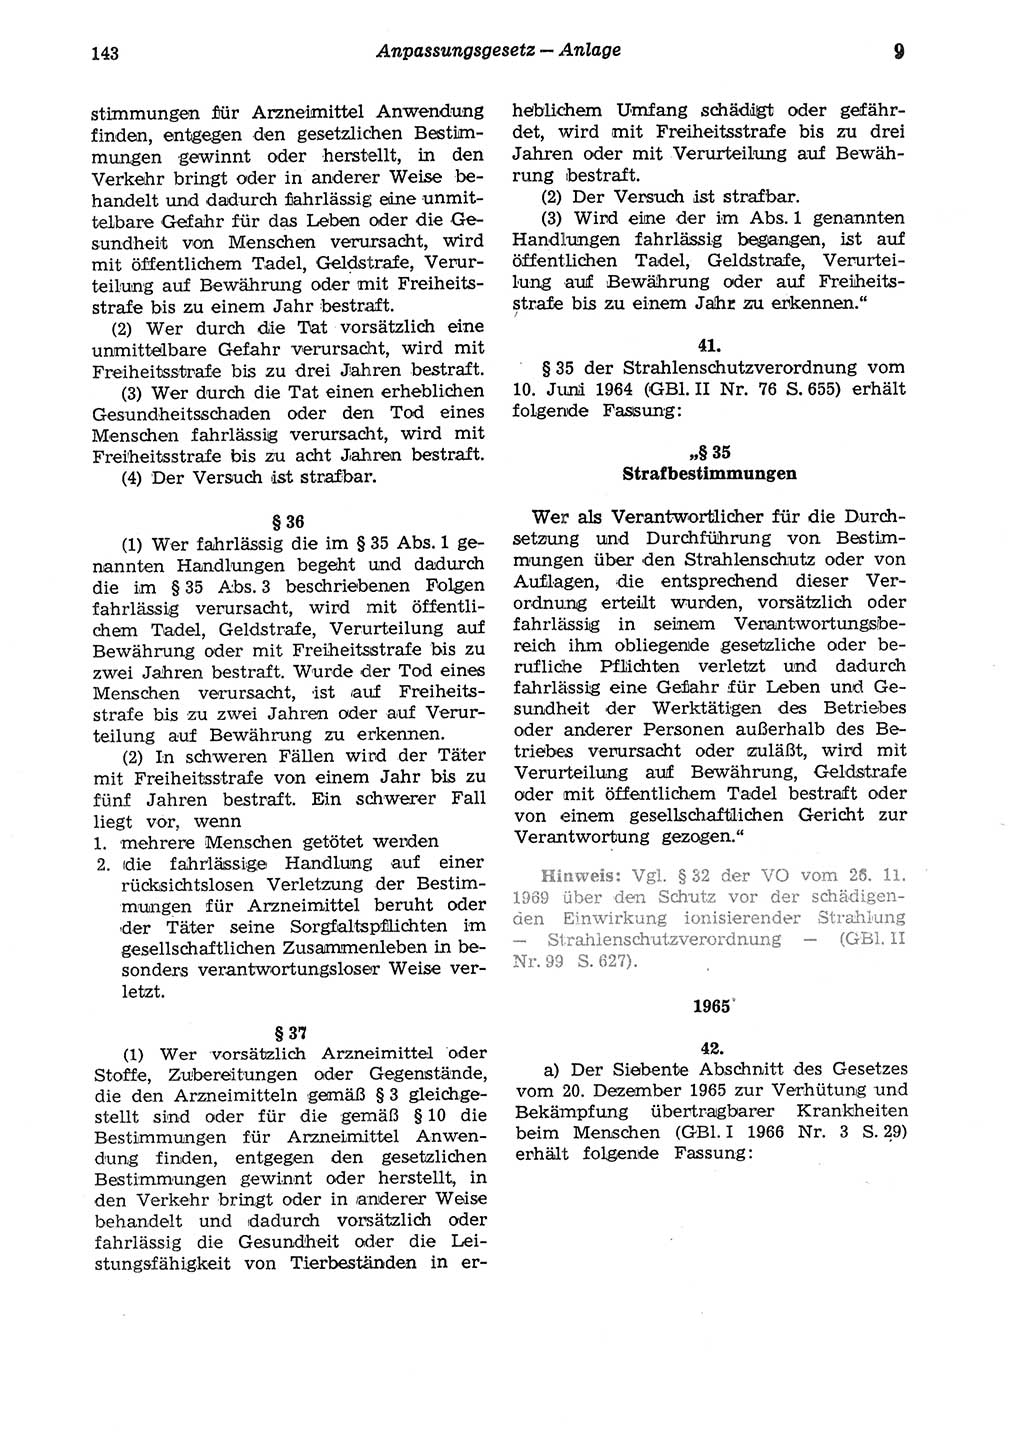 Strafgesetzbuch (StGB) der Deutschen Demokratischen Republik (DDR) und angrenzende Gesetze und Bestimmungen 1975, Seite 143 (StGB DDR Ges. Best. 1975, S. 143)